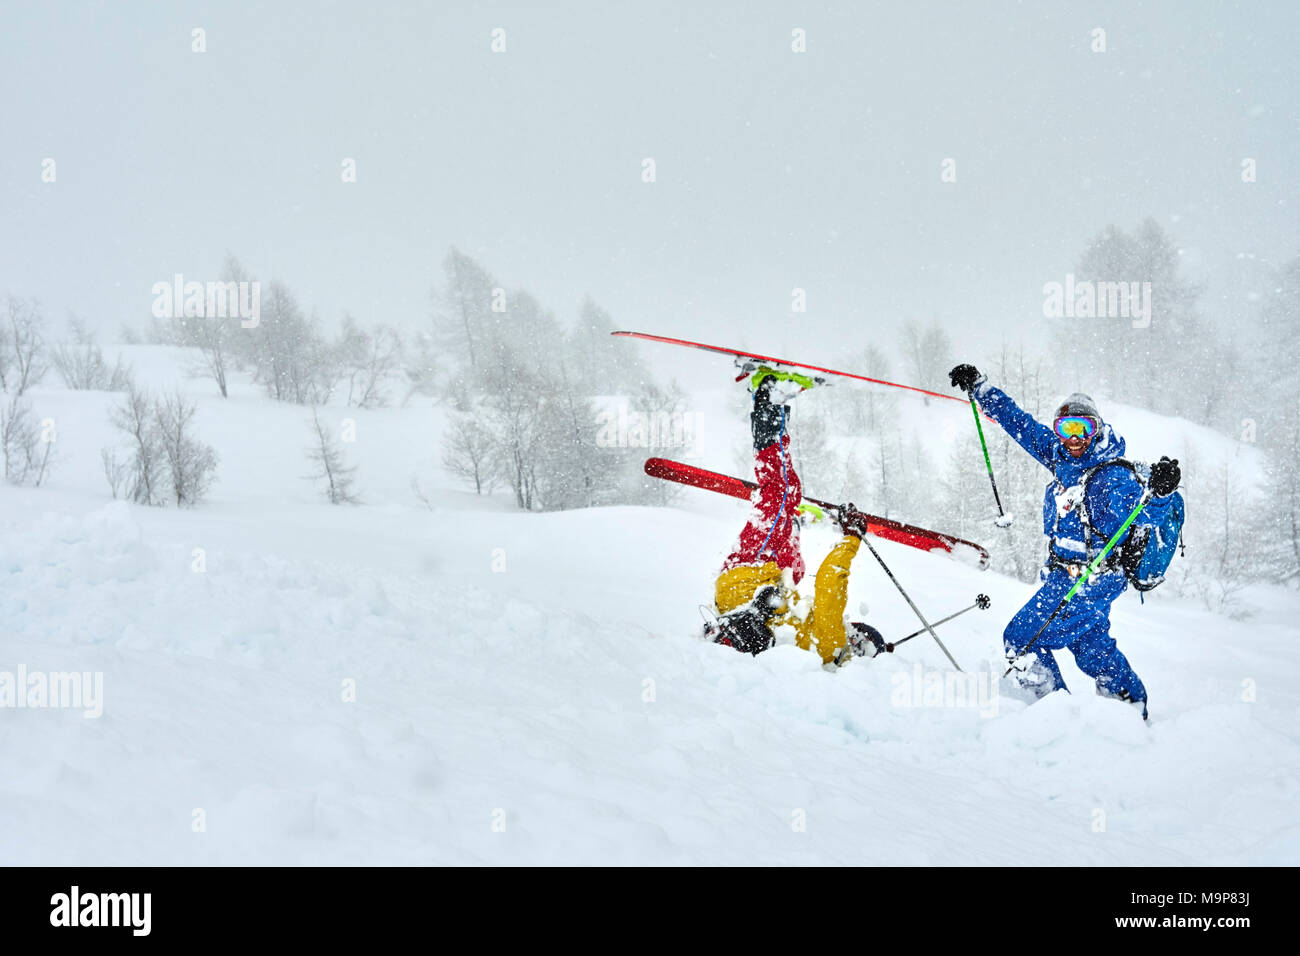 Les skieurs s'amusant dans la neige, Pavillon, Courmayeur, Aoste, Italie Banque D'Images